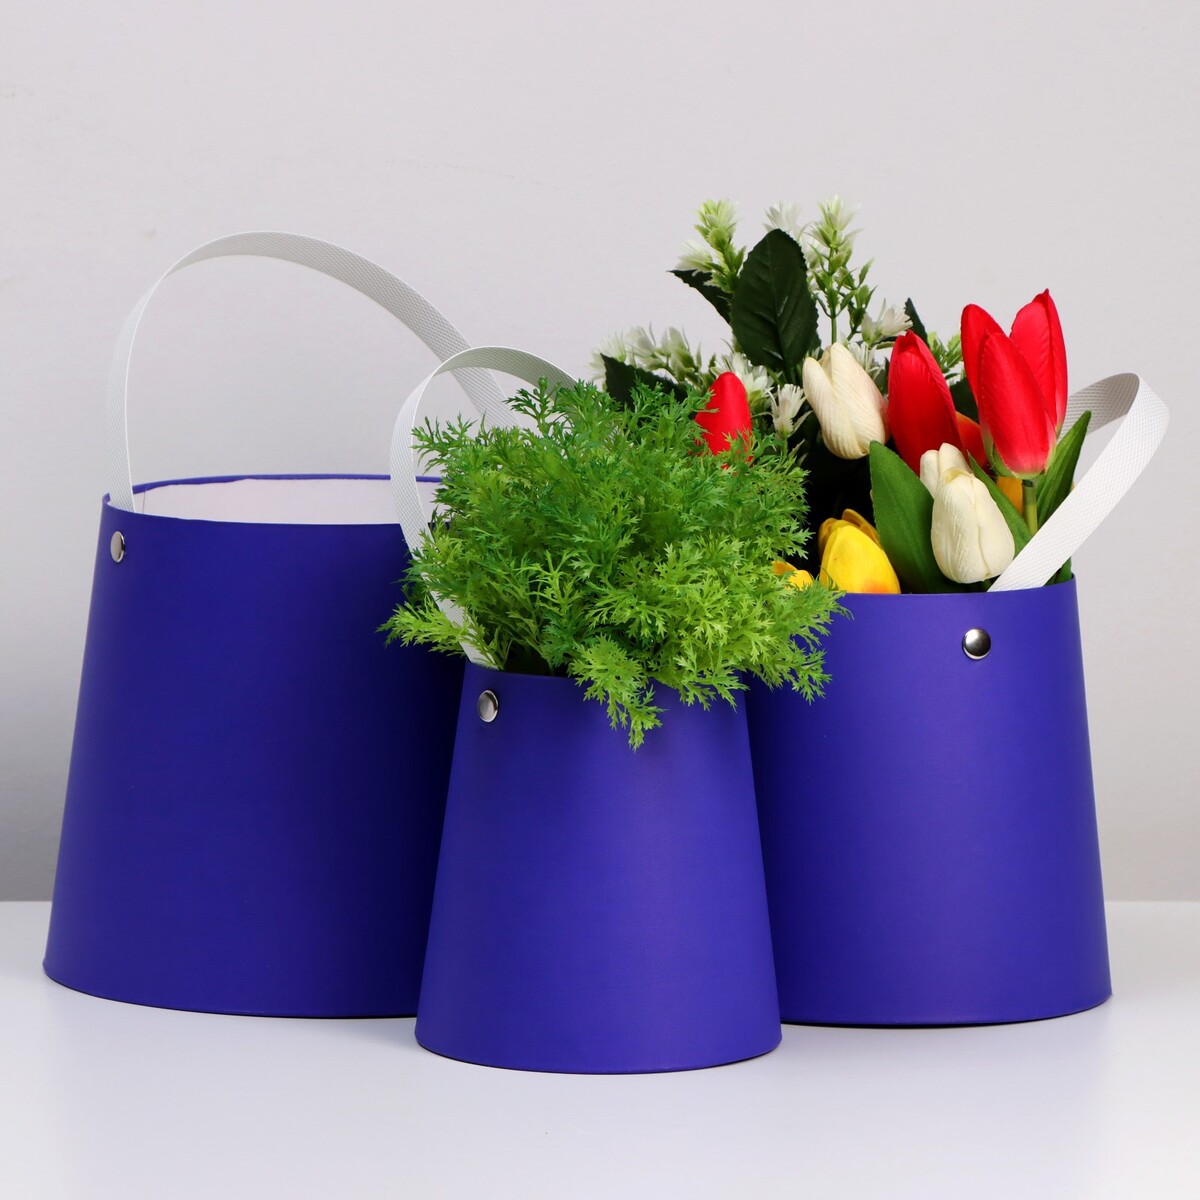 Набор коробок 3 в 1 обратный конус фиолетовый без крышек с ручкой 11-14 х 14-16 х 16-18 см набор сумок в роддом 3 шт ной пвх фиолетовый